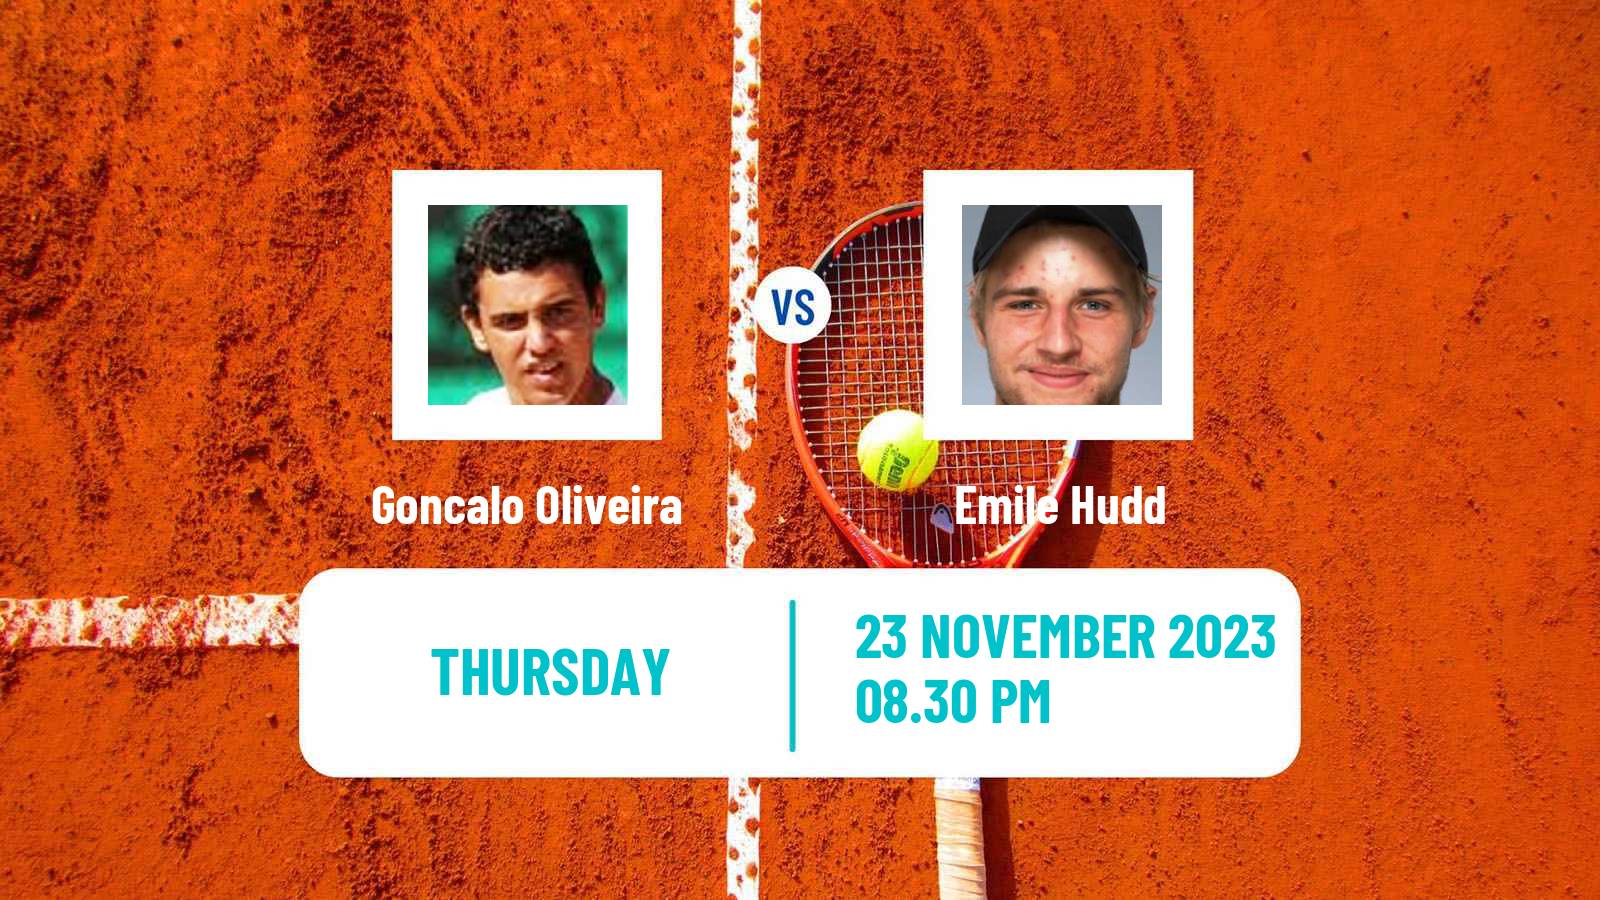 Tennis ITF M25 Brisbane Men Goncalo Oliveira - Emile Hudd